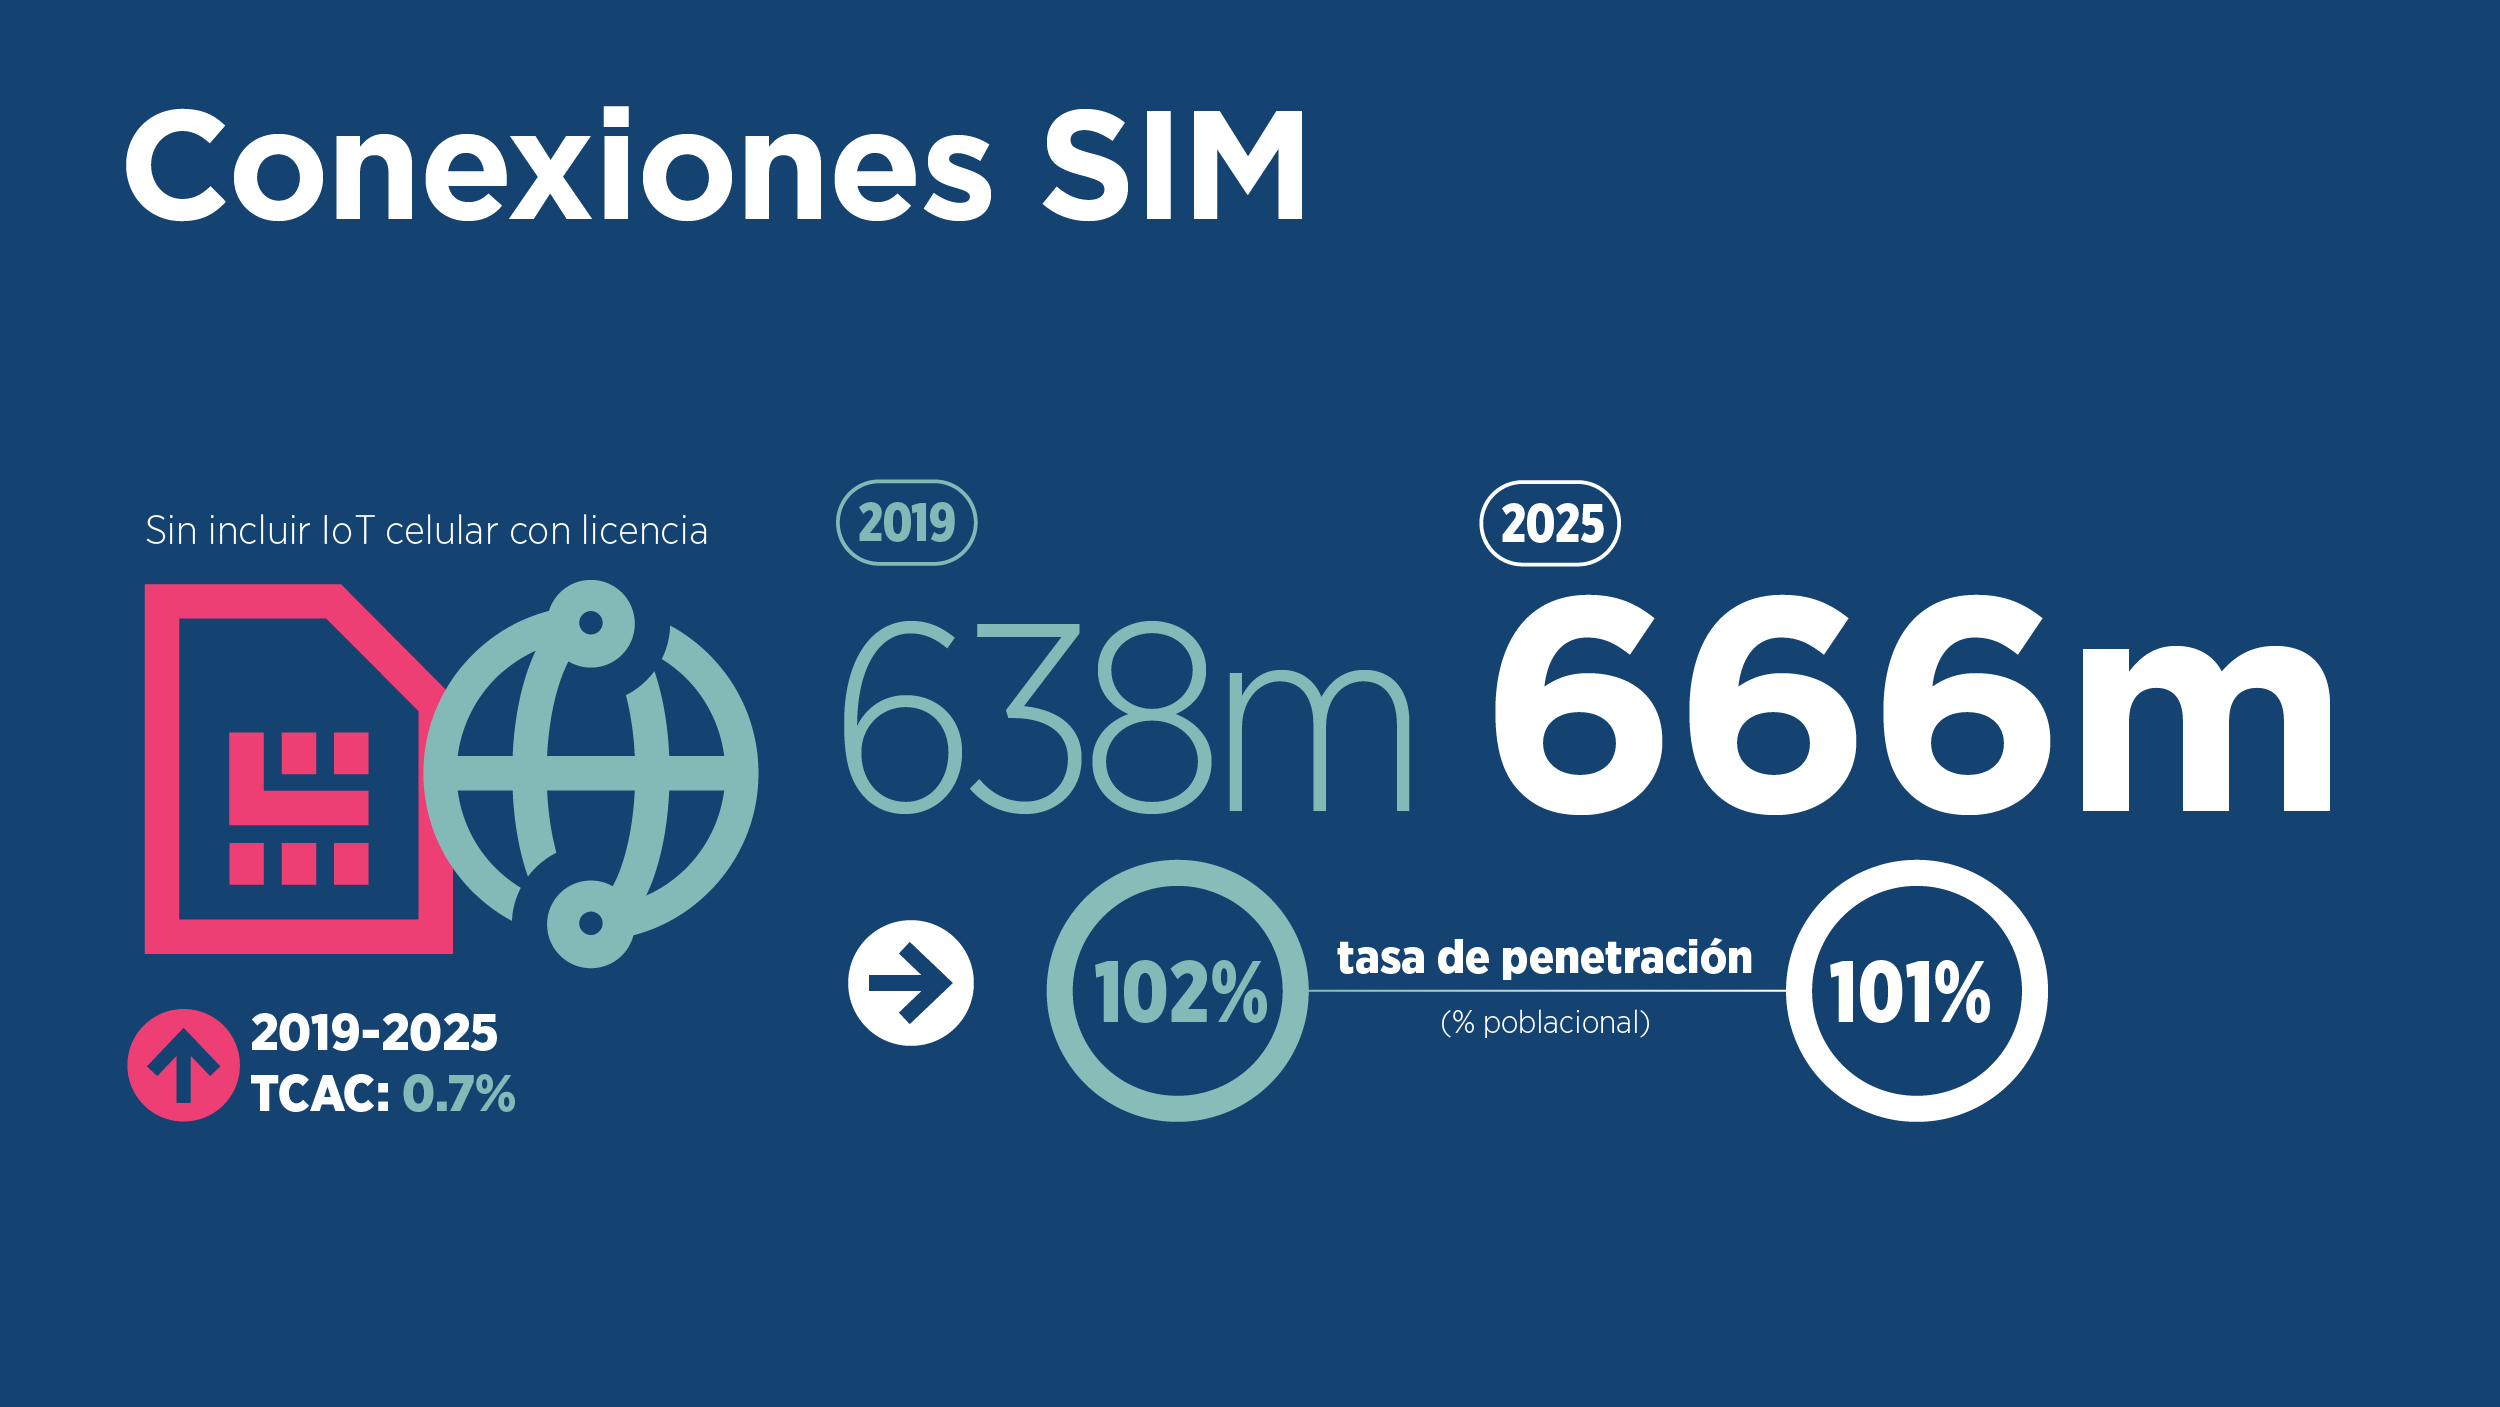 La GSMA anuncia que Latinoamérica alcanzará 750 millones de conexiones móviles para el año 2015 conforme la Banda Ancha Móvil gana inercia